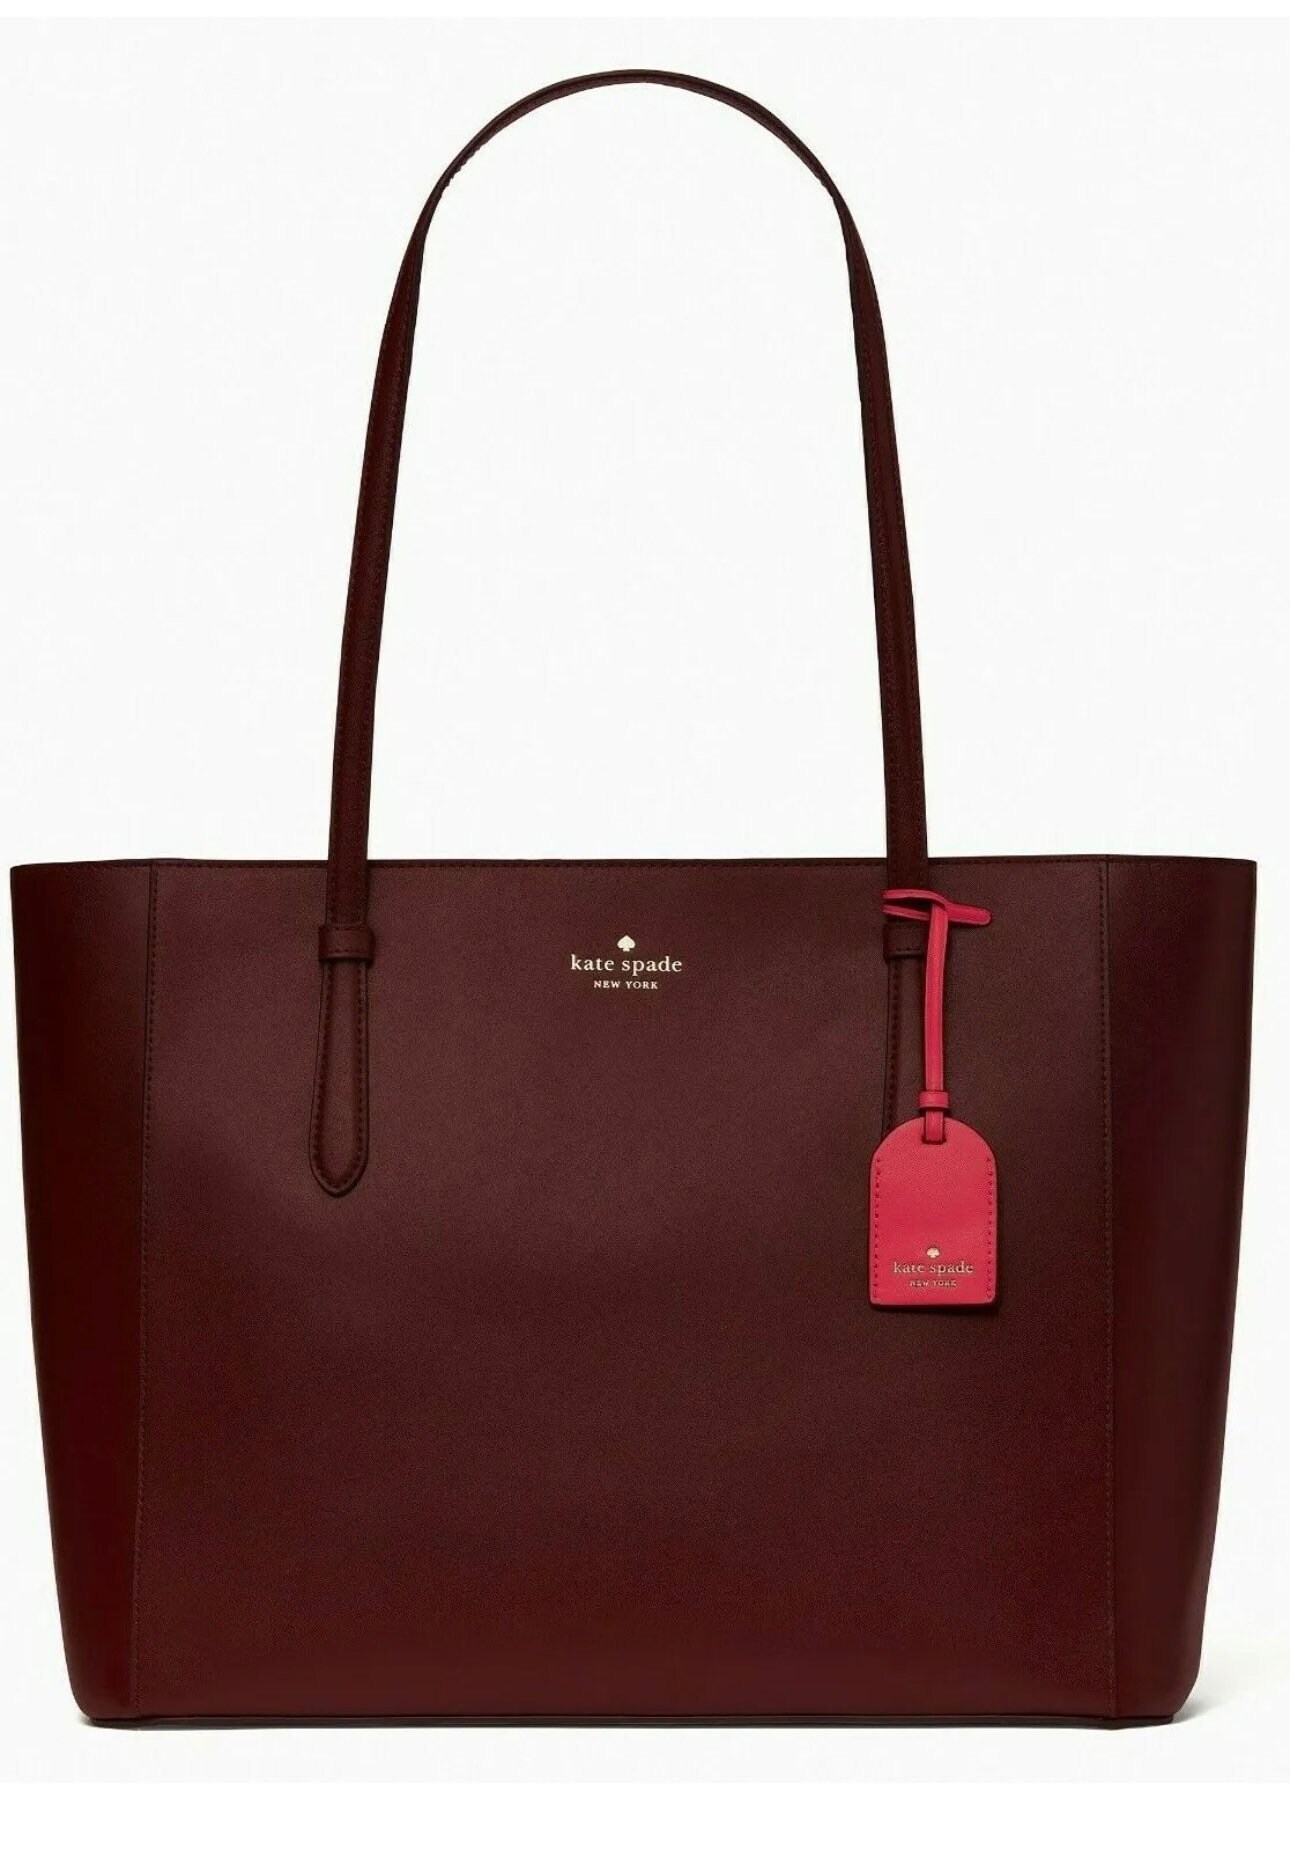 Kate Spade Burgundy Handbag - Gem